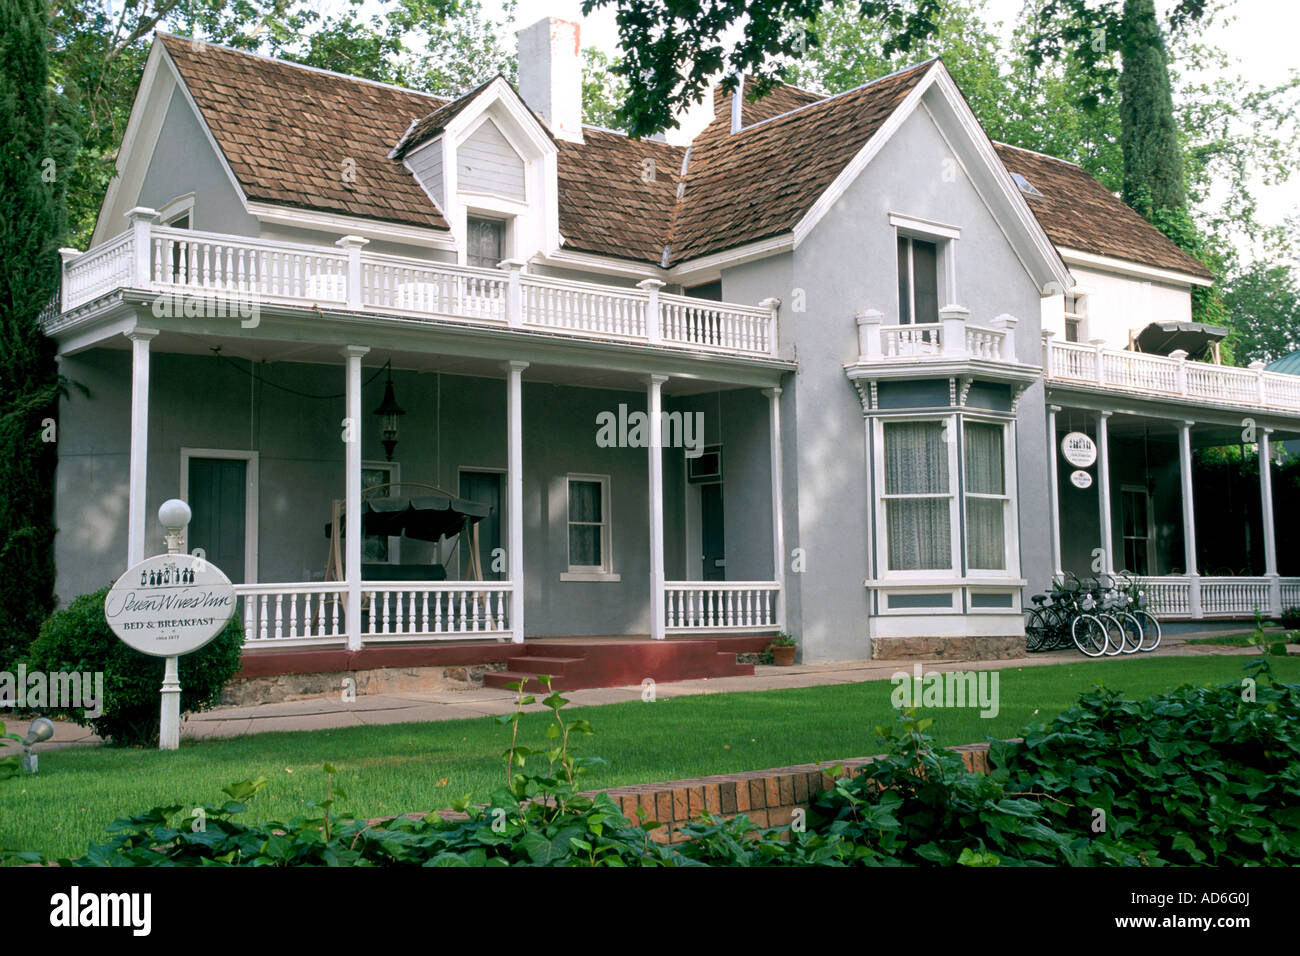 Seven Wives Bed Breakfast Inn Orig Woolley Foster Home 1870 Utah s Dixie St George UTAH Stock Photo